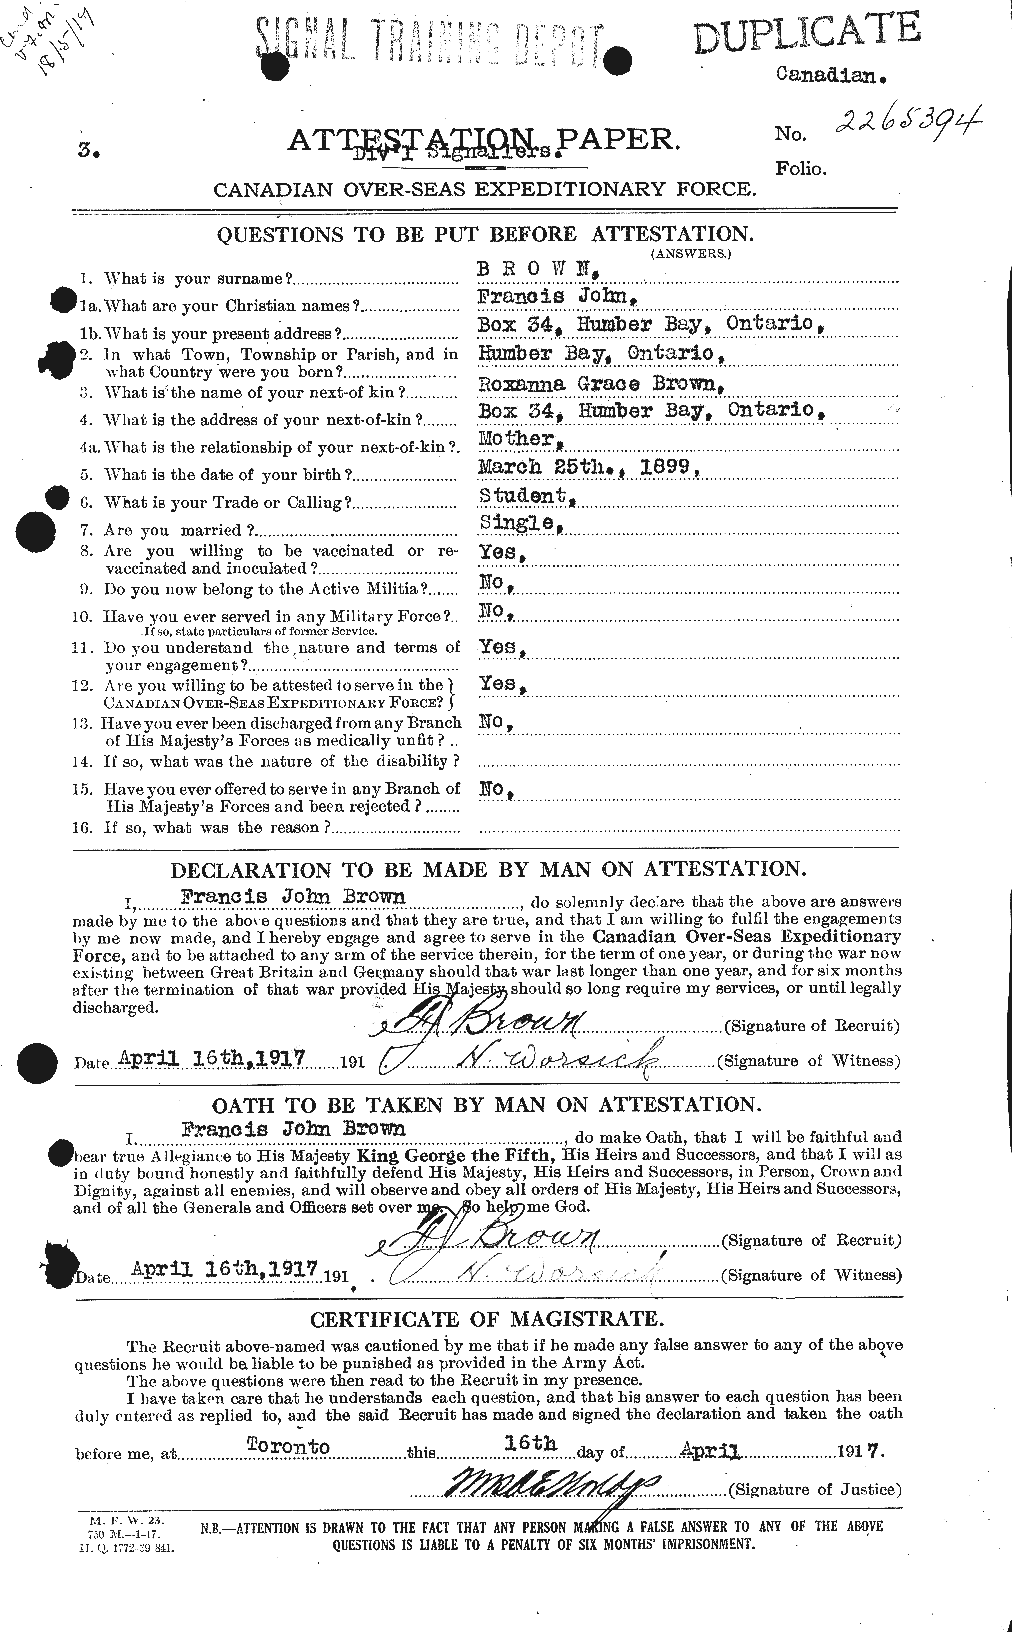 Dossiers du Personnel de la Première Guerre mondiale - CEC 266079a